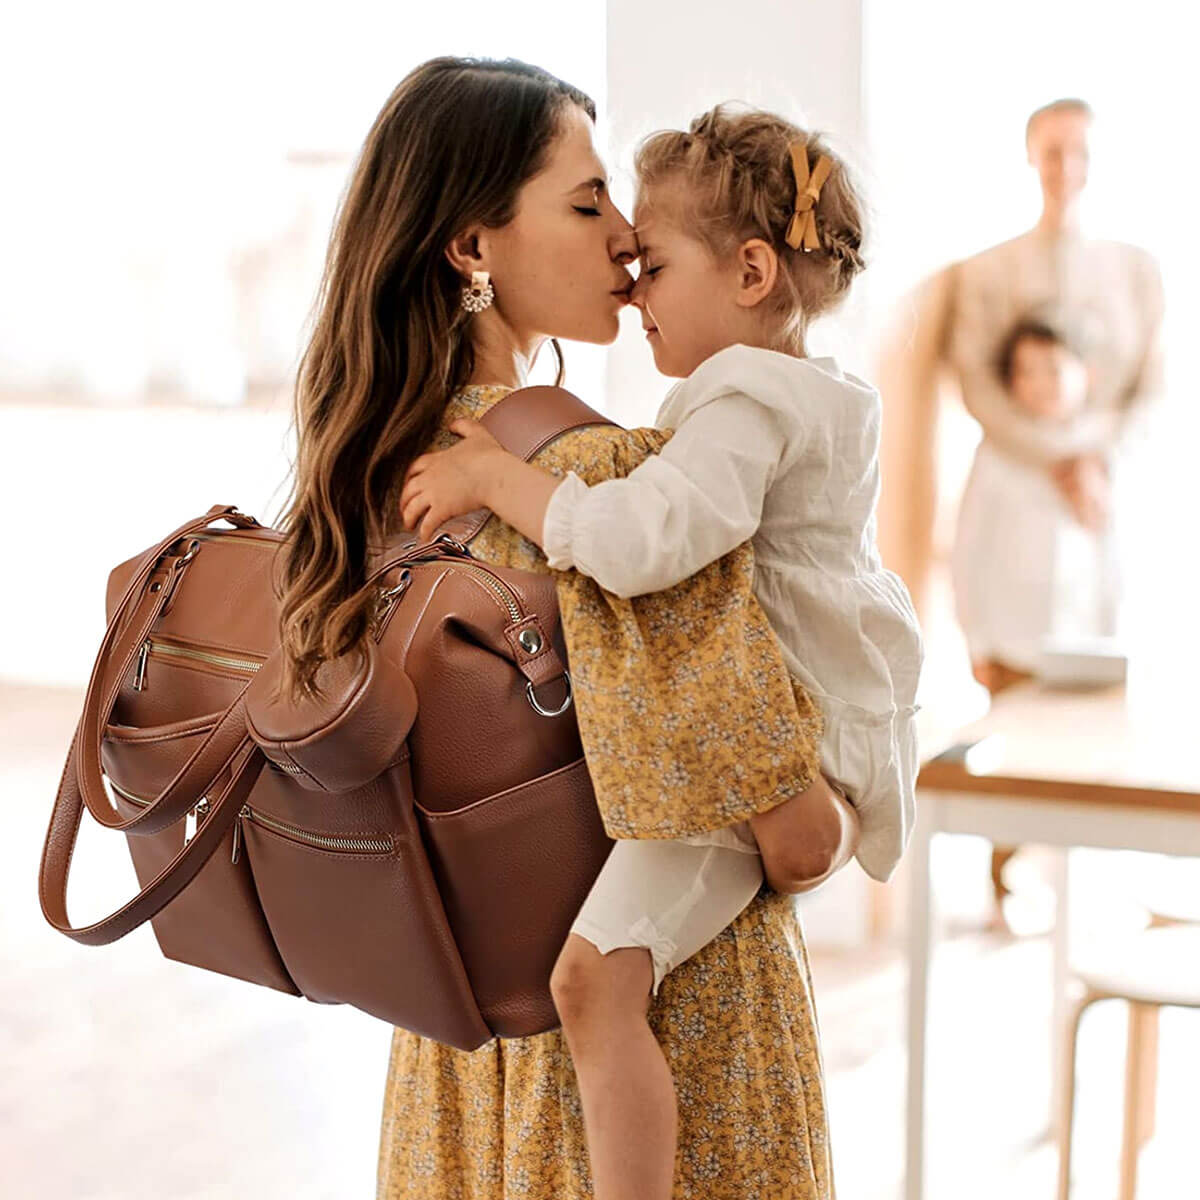 Luksus pusletaske rygsæk til forældre – Kidy Bidy